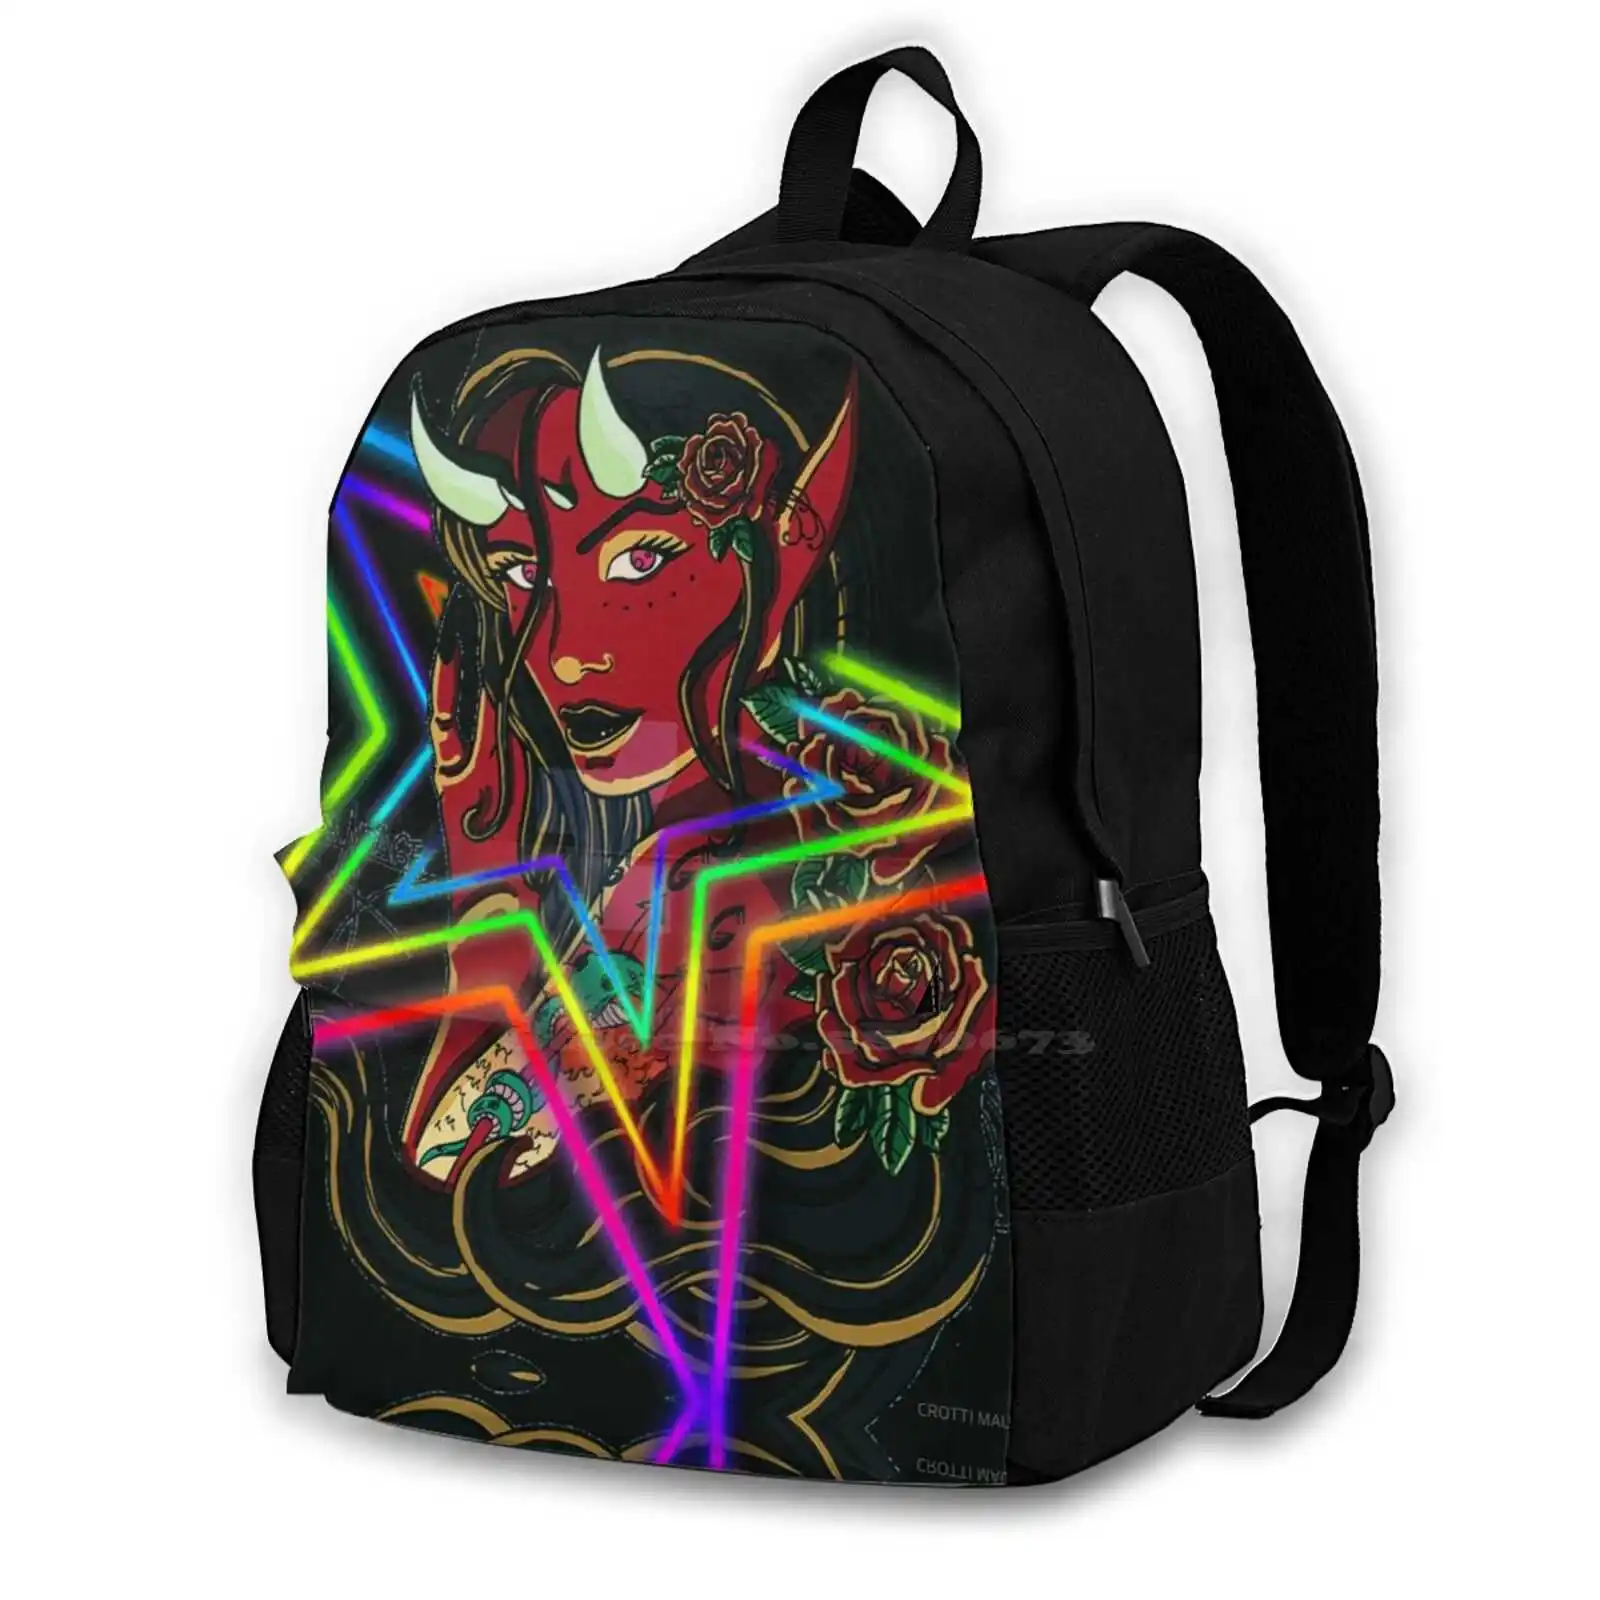 

Diavolessa Large Capacity School Backpack Laptop Travel Bags Magliette E D Accessori Vari Solo Per Voi Personalizzati Disegno